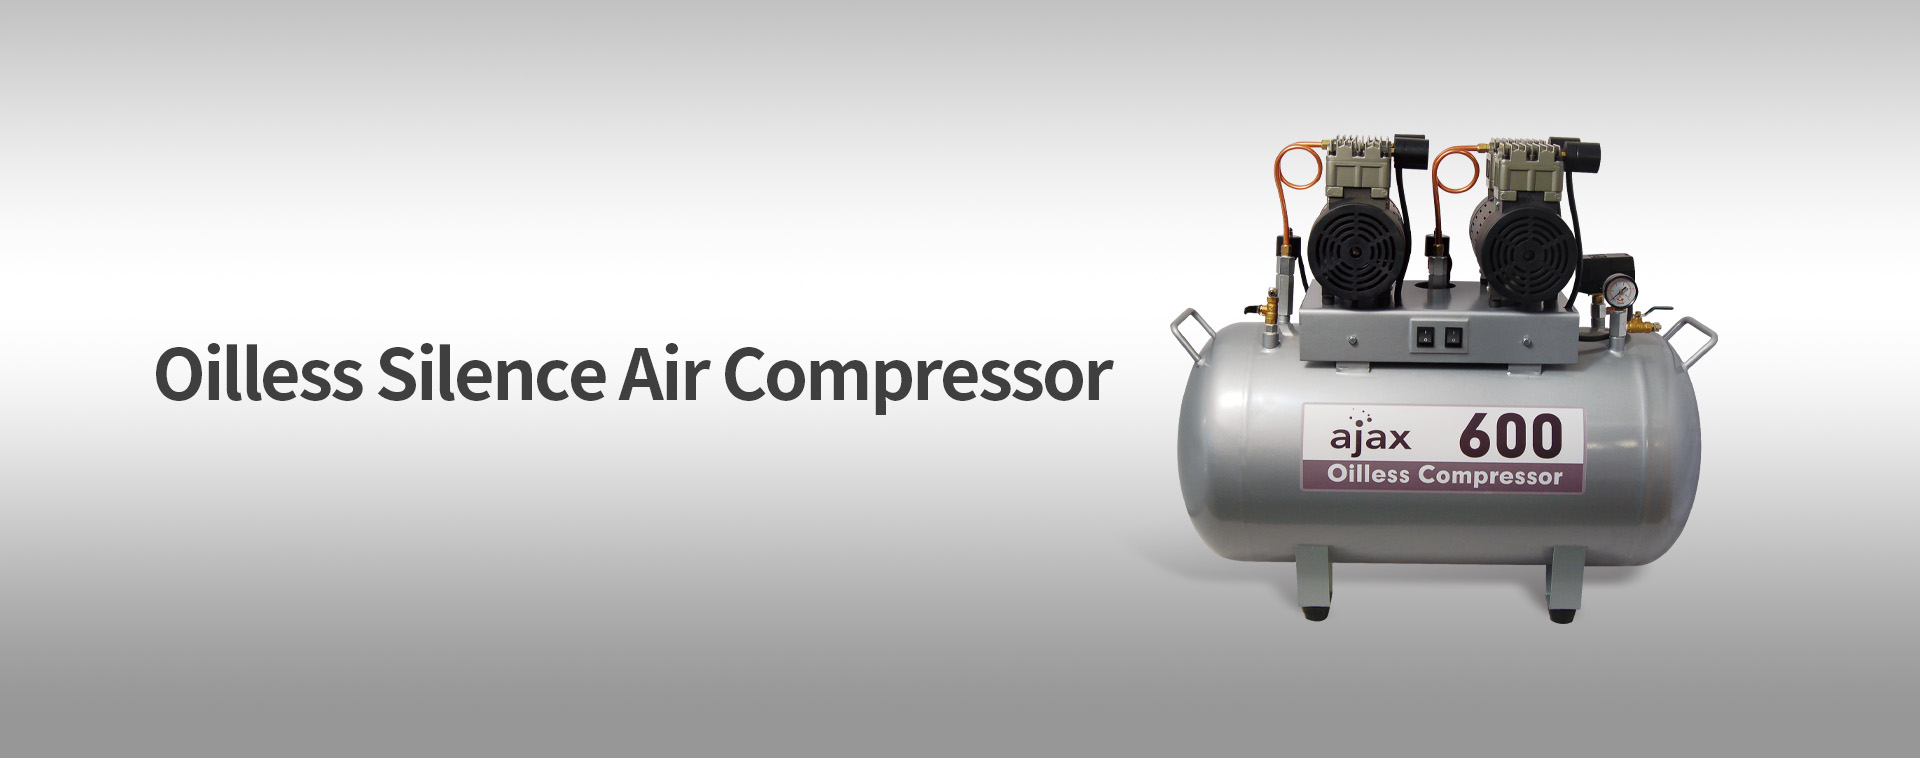 Compresor de aire Ajax 600